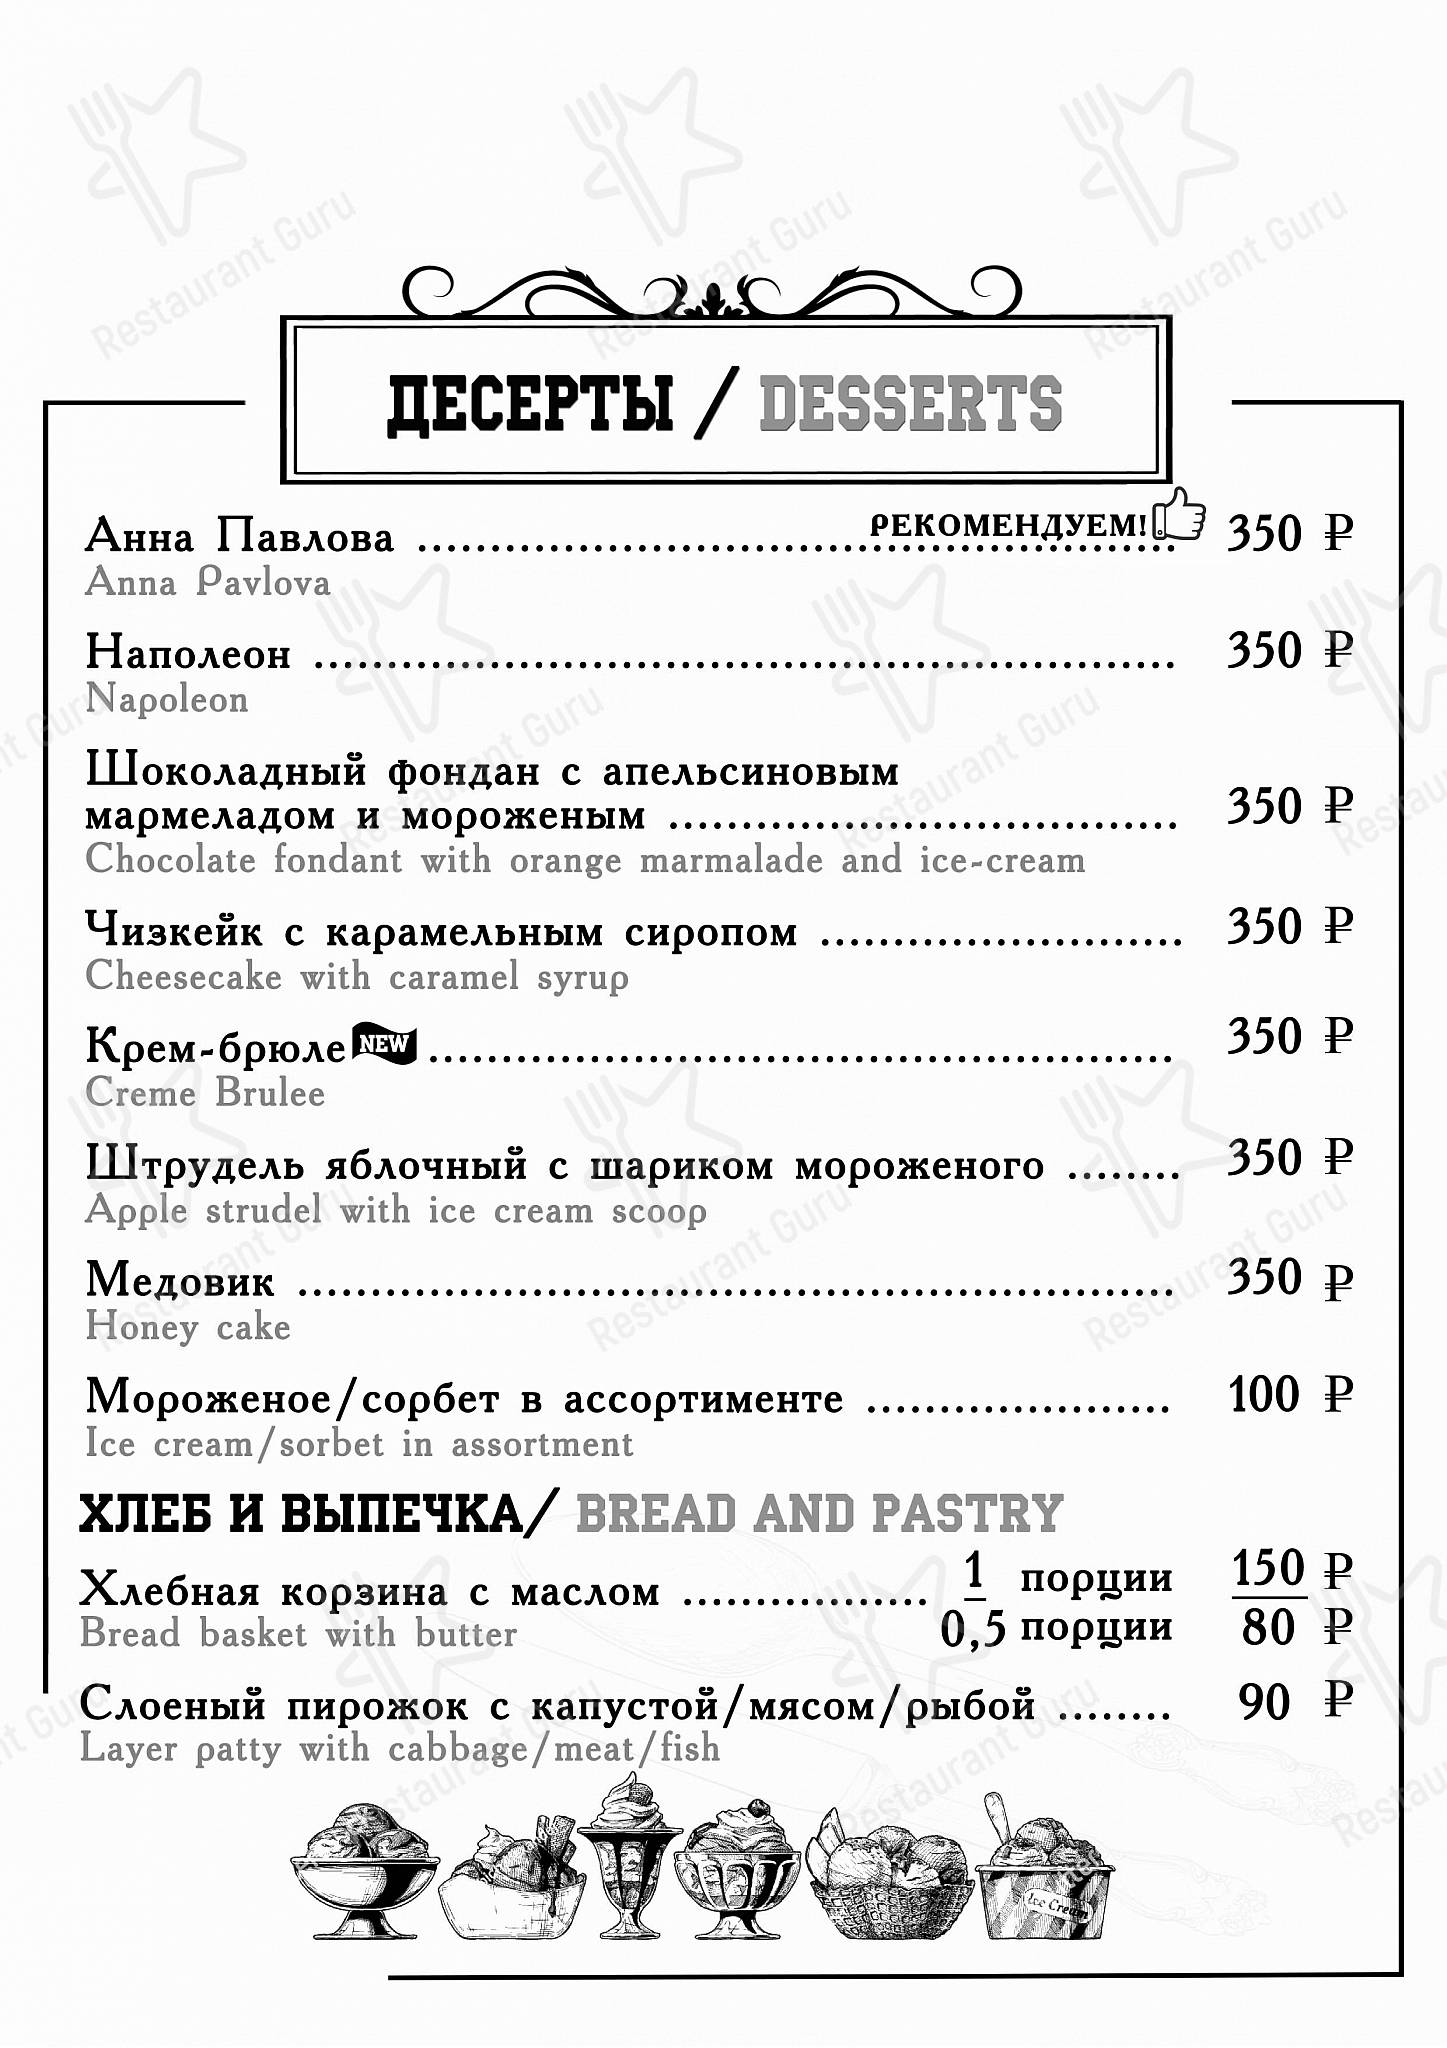 Метрополь ресторан меню и цены